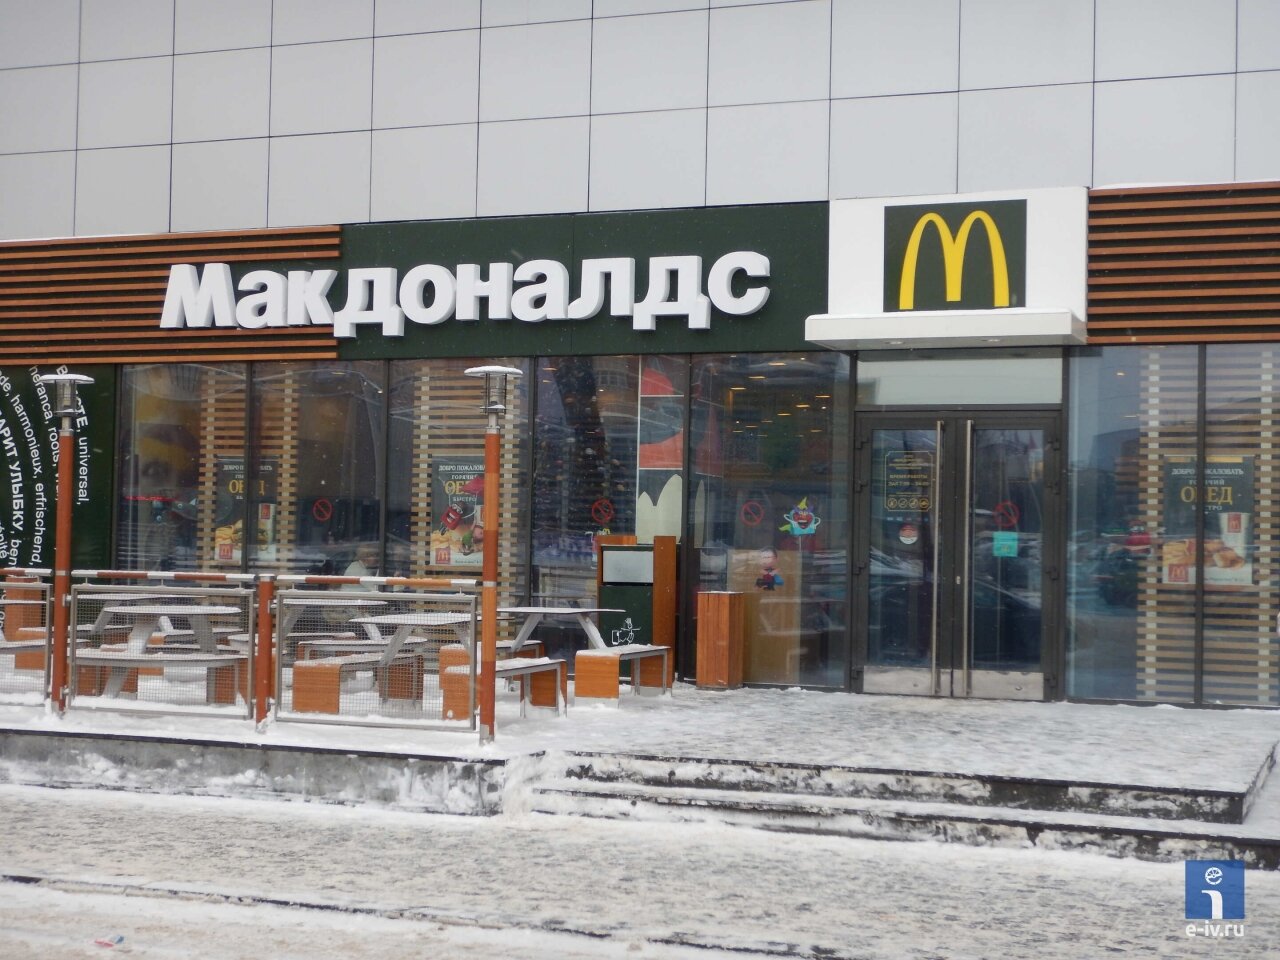 Ресторан быстрого питания "Макдоналдс", Ивантеевка, Московская область